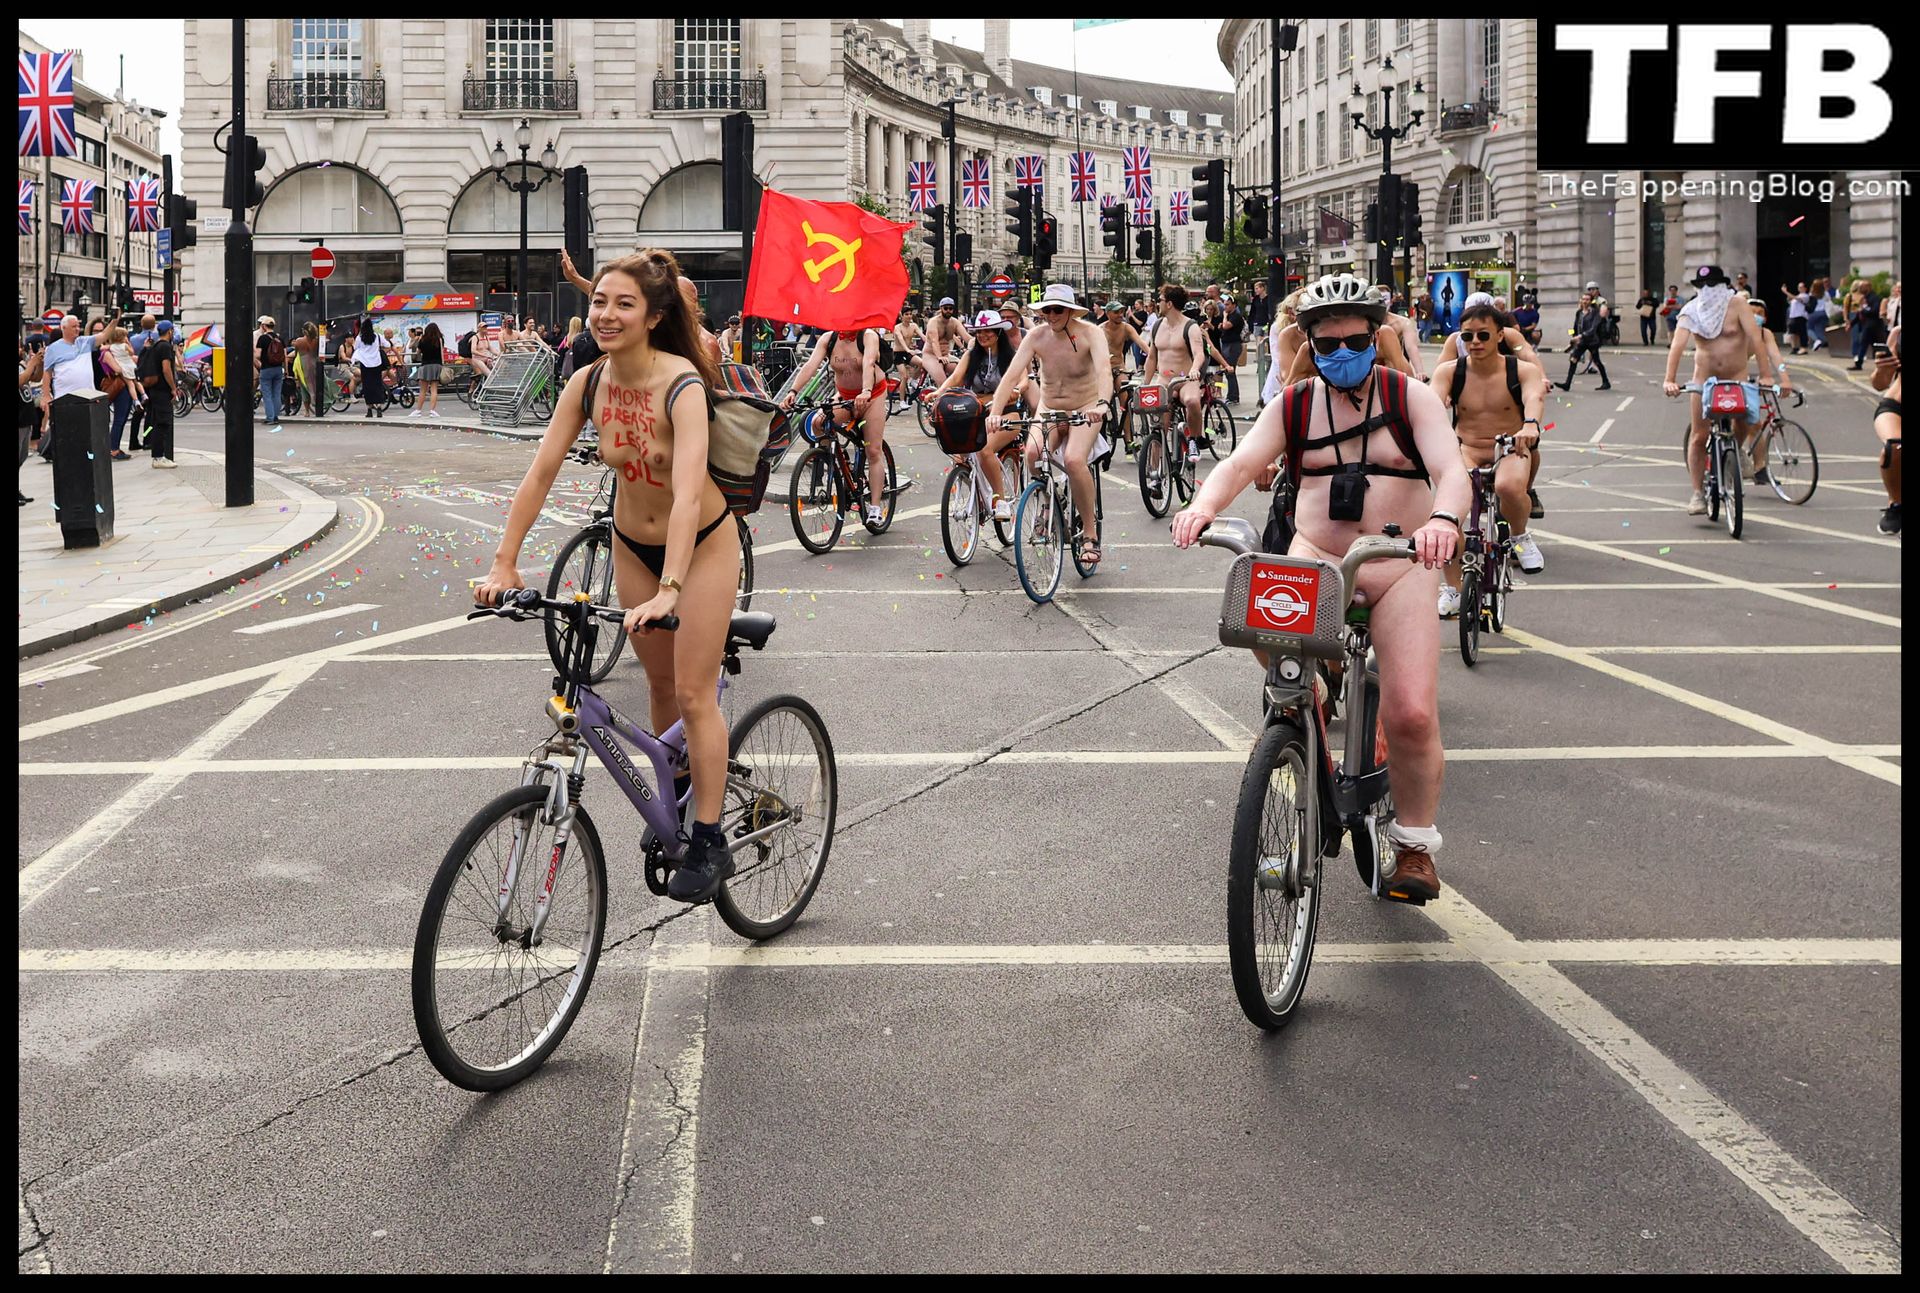 The-2022-World-Naked-Bike-Ride-The-Fappening-Blog-30.jpg